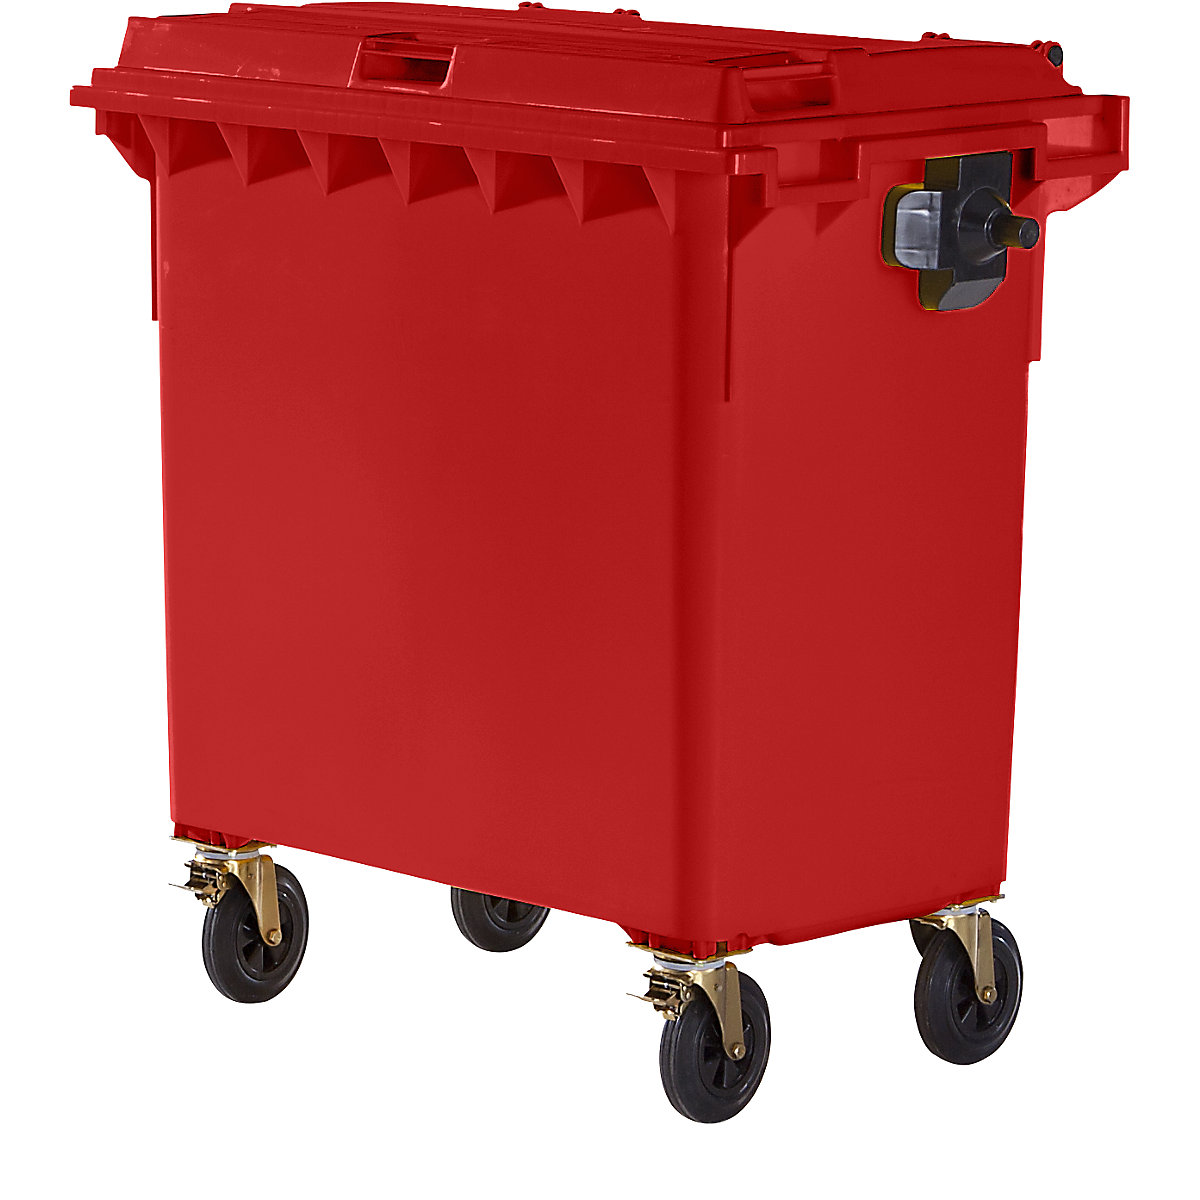 Conteneur à ordures en plastique conforme DIN EN 840, capacité 770 l, l x h x p 1360 x 1330 x 770 mm, rouge